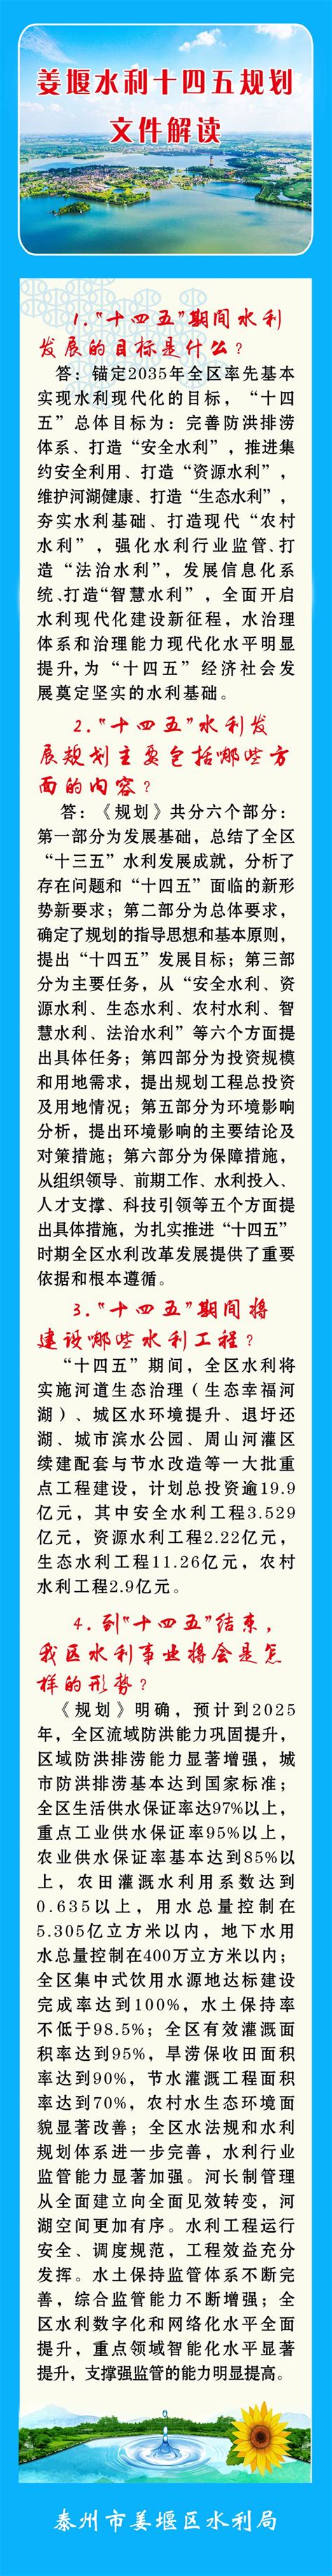 《姜堰区张甸镇副中心建设配套支持政策》政策图解